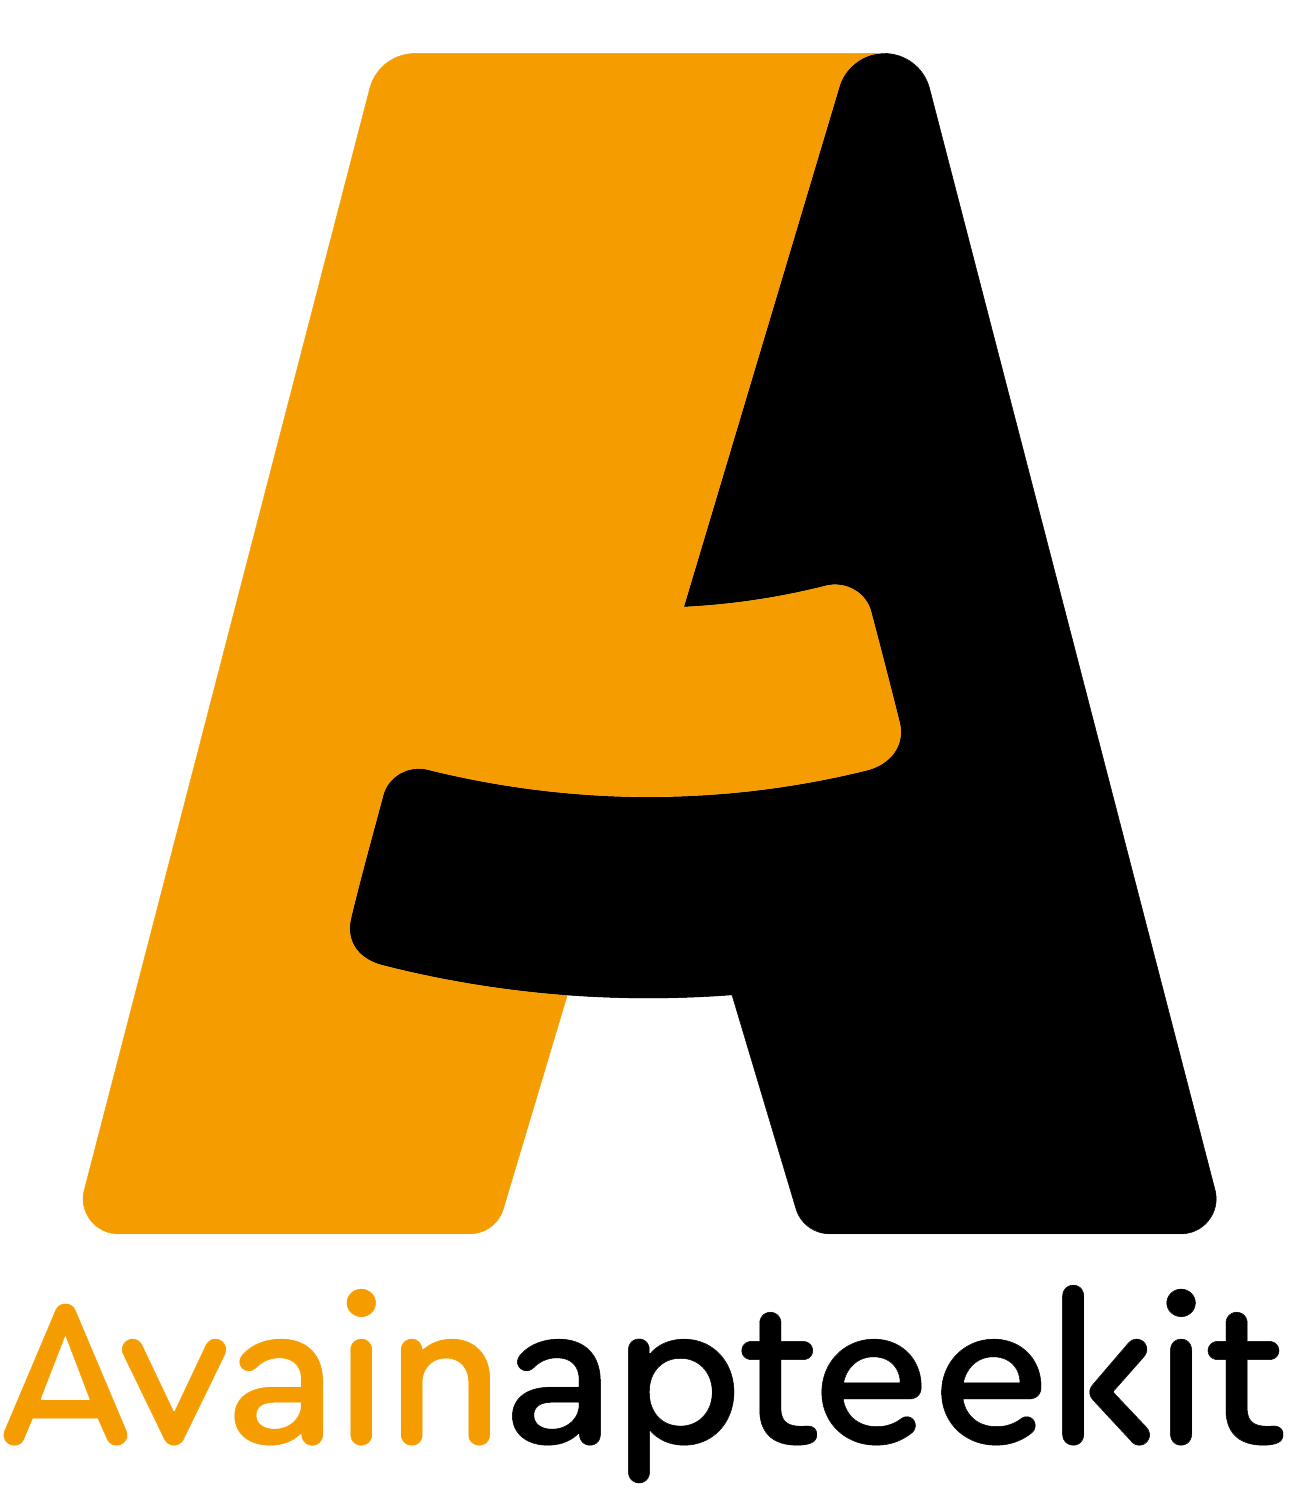 Avainapteekit logo